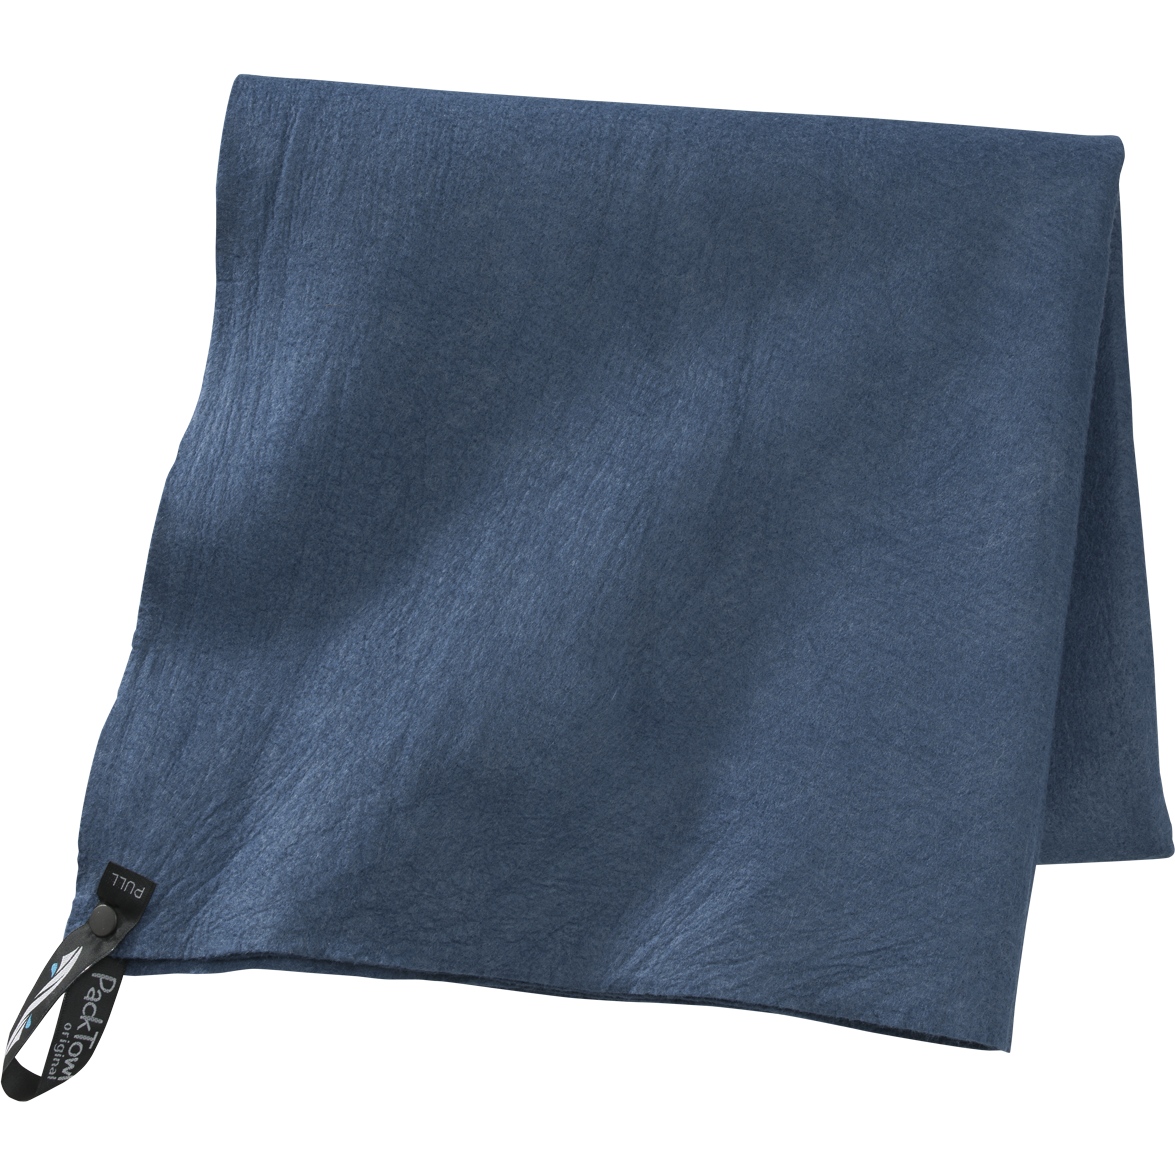 Produktbild von PackTowl Original L - Handtuch - blau